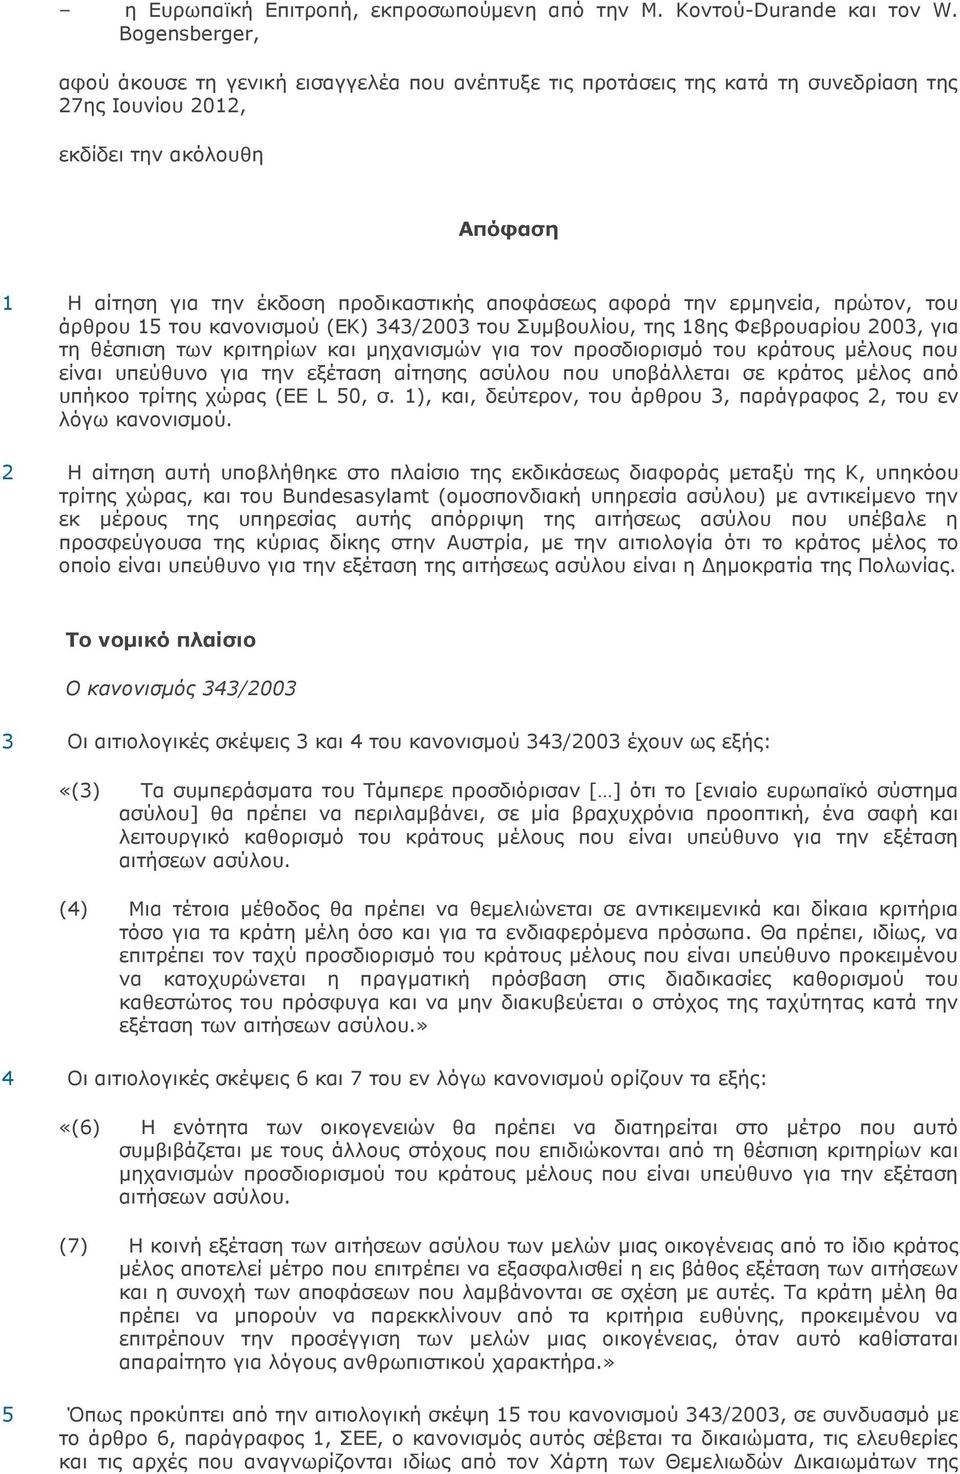 αφορά την ερµηνεία, πρώτον, του άρθρου 15 του κανονισµού (ΕΚ) 343/2003 του Συµβουλίου, της 18ης Φεβρουαρίου 2003, για τη θέσπιση των κριτηρίων και µηχανισµών για τον προσδιορισµό του κράτους µέλους